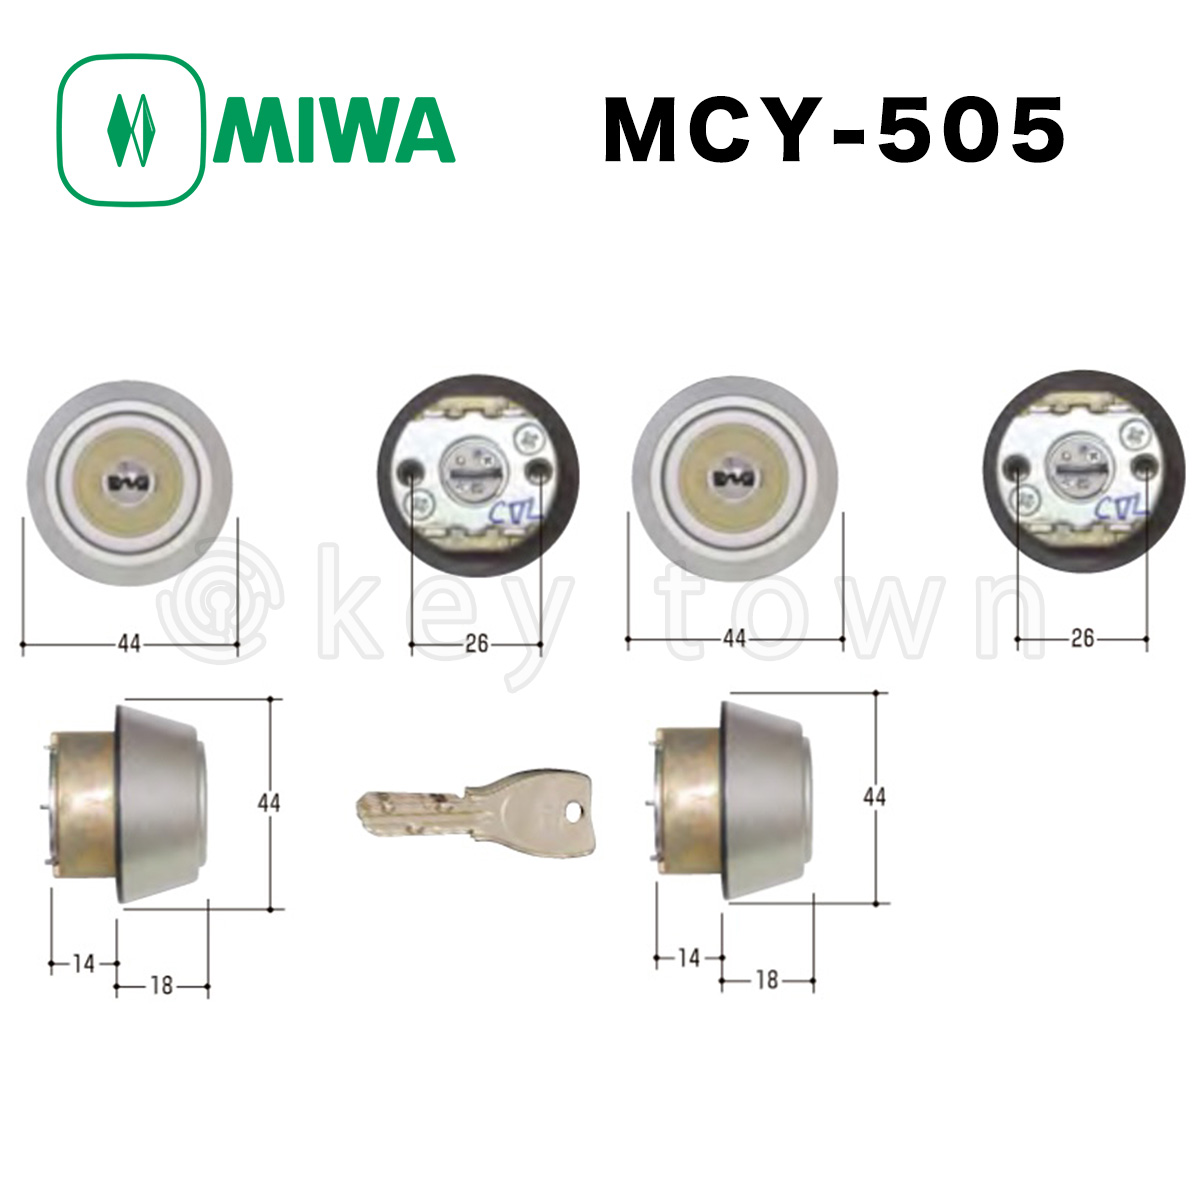 ミズタニ:MIWA取替用シリンダー MCY-504 鍵 交換用